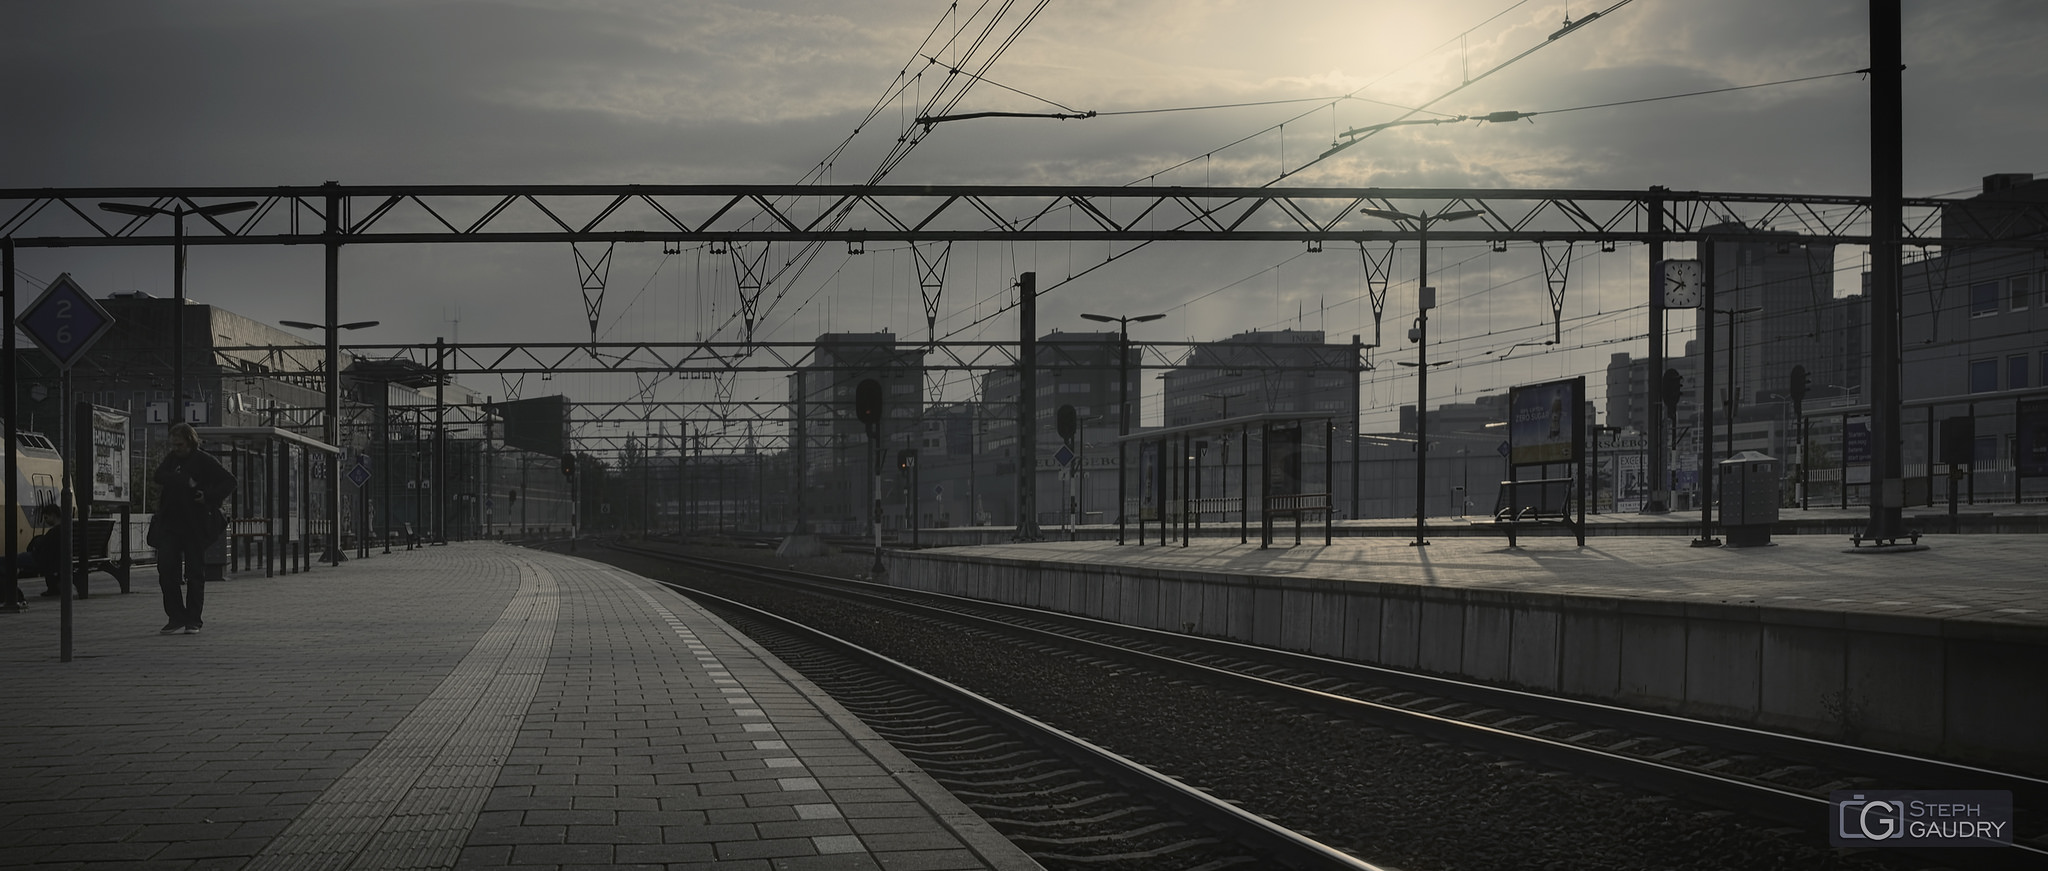 Eindhoven, les quais de la gare [Klicken Sie hier, um die Diashow zu starten]